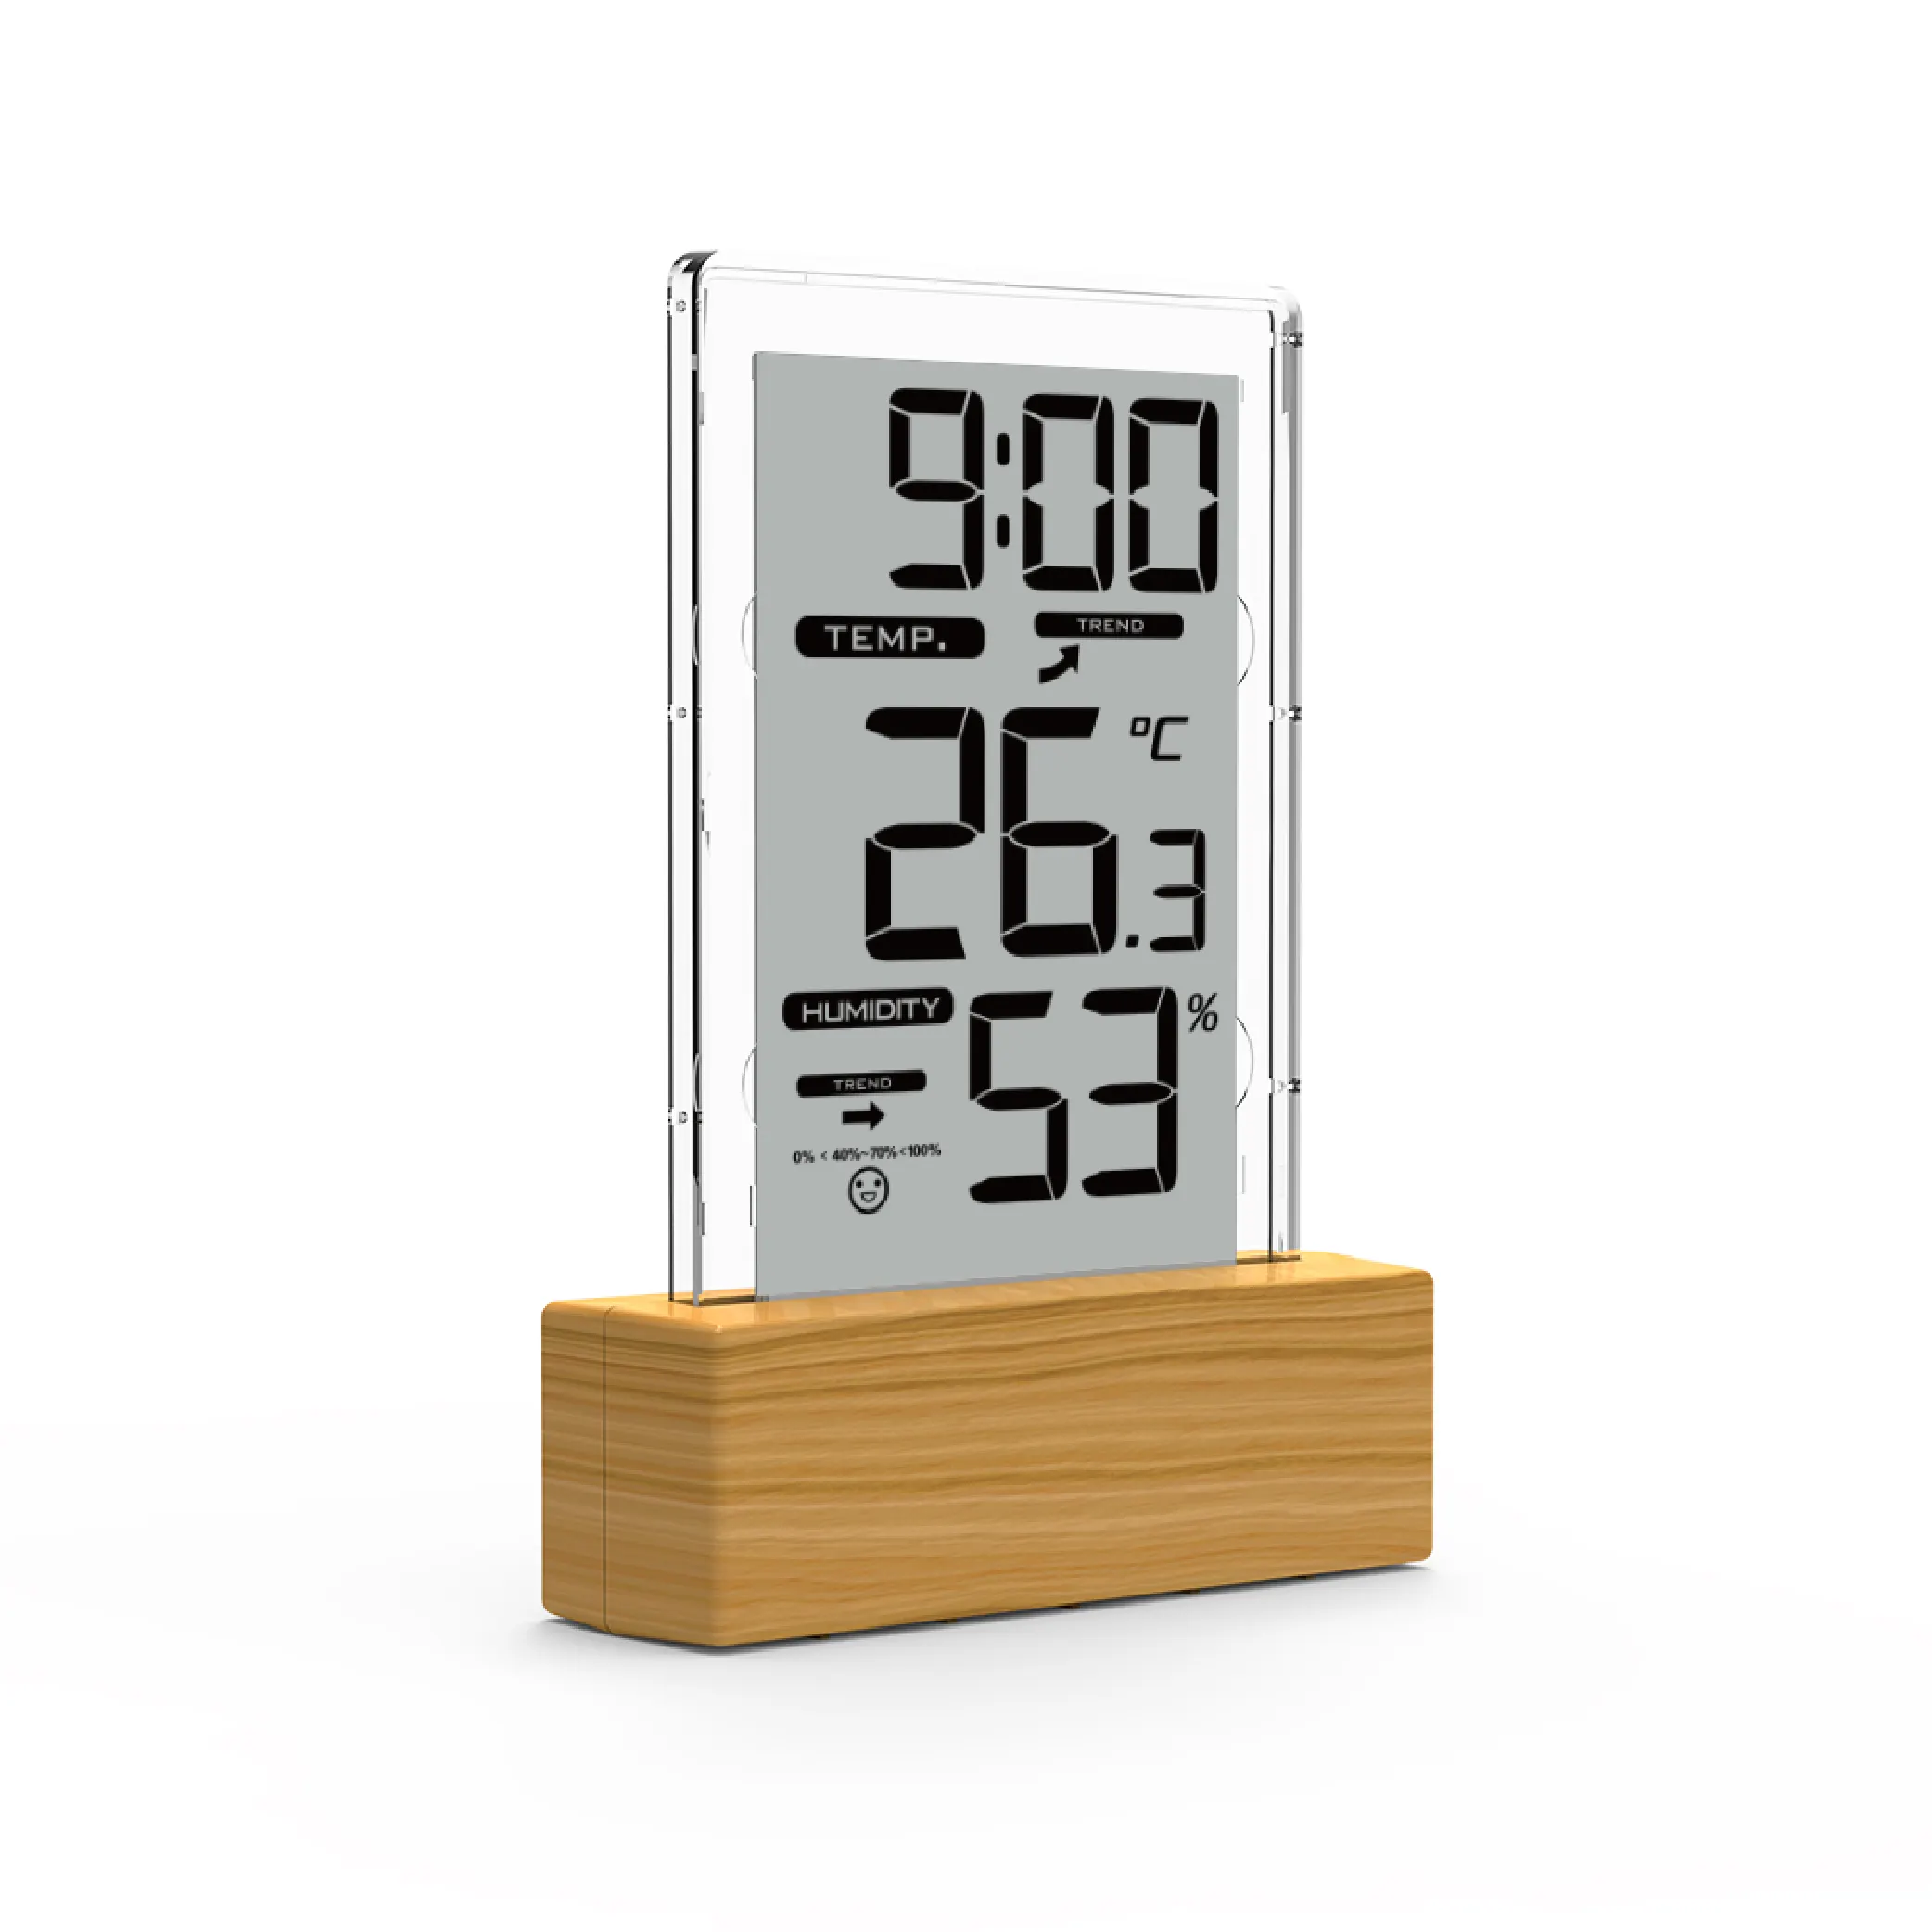 digital display clock